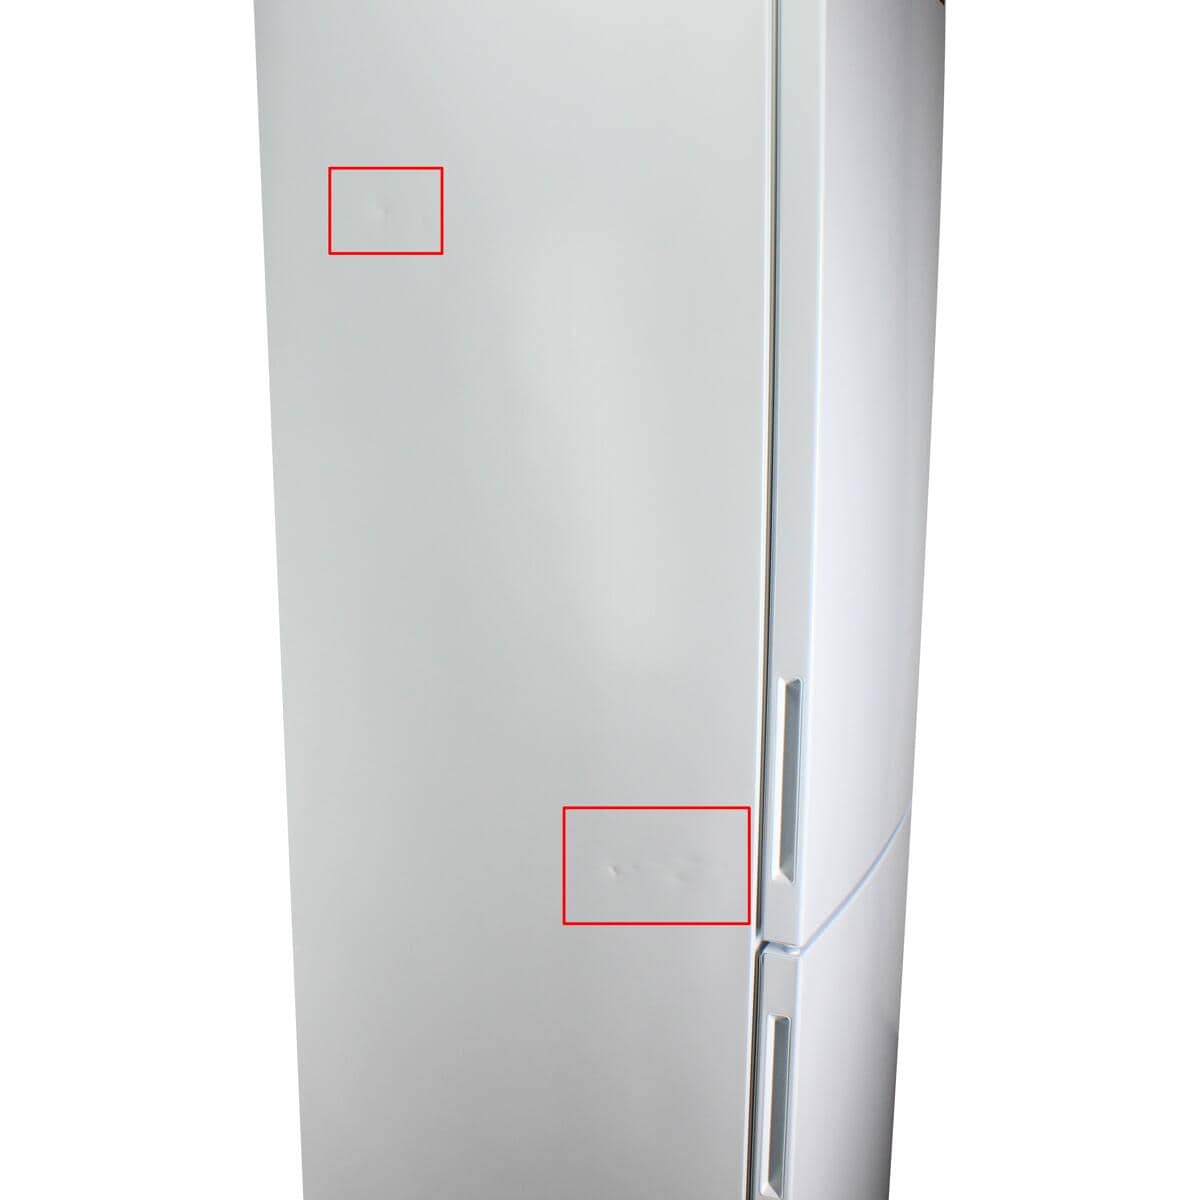 LG GBP62SWNAC LED weiß Stand-Kühl-Gefrierkombination Frostfrei Beleuchtung 59,5cm breit Nullzone 384 Liter Multi-Airflow